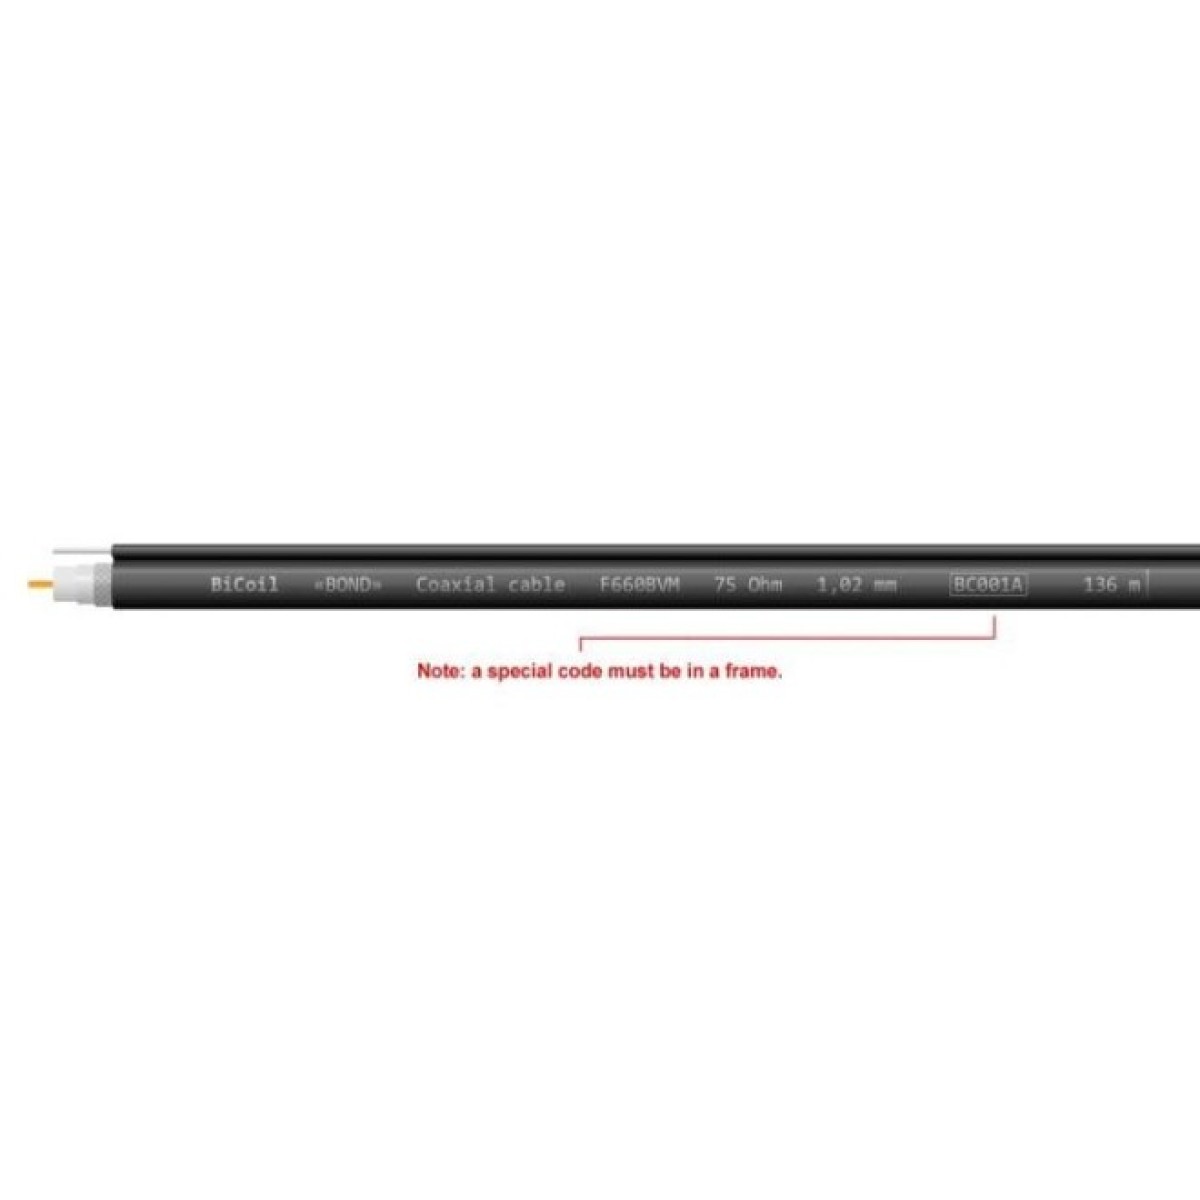 Коаксіальний кабель F660BVM CCS (Чорний) 75 Ом 305м BiCoil BOND 98_98.jpg - фото 4